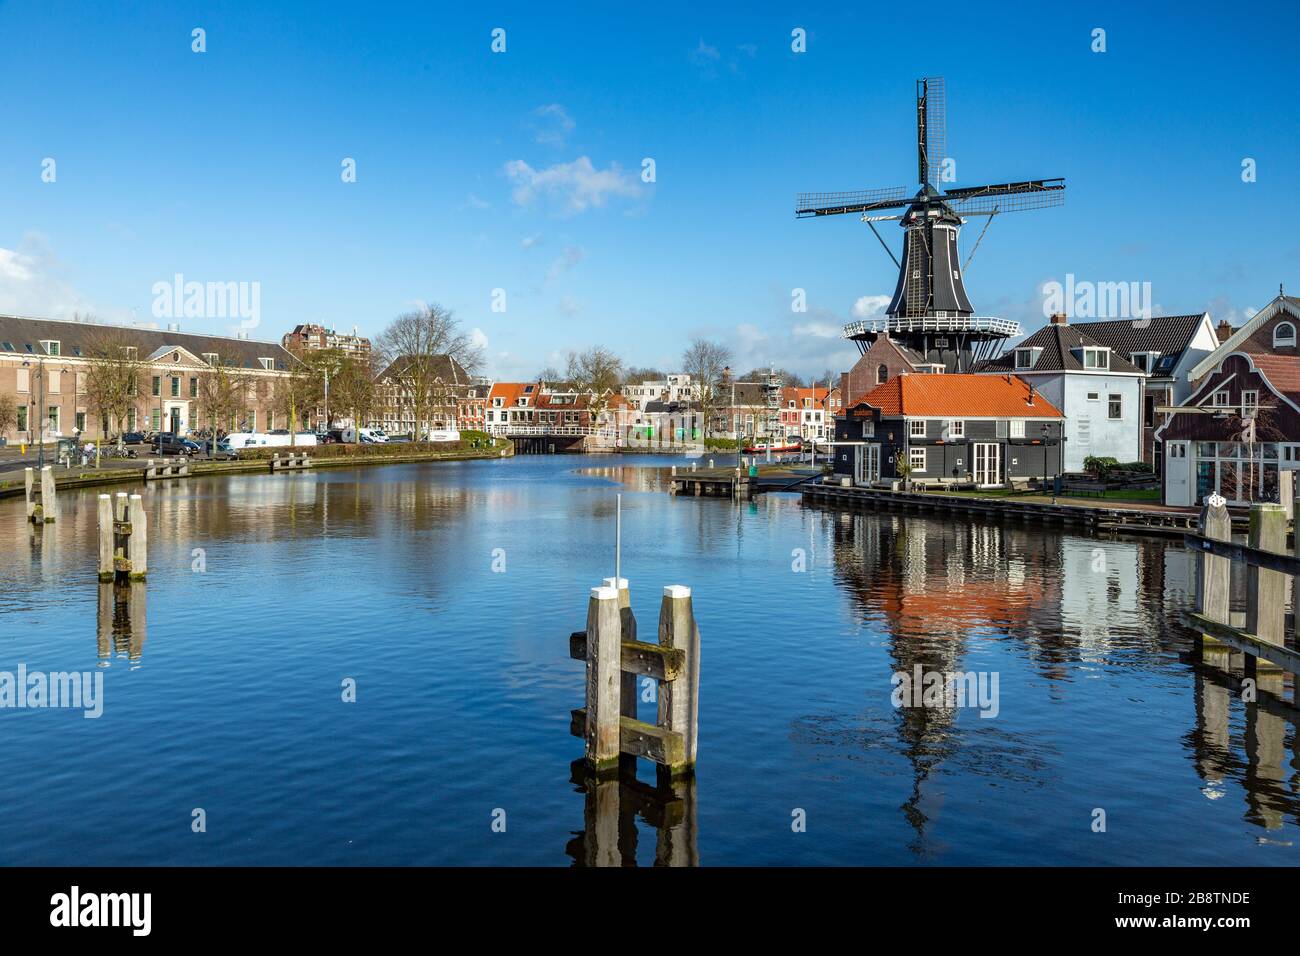 De Adriaan est un moulin à vent à Haarlem, Pays-Bas qui a brûlé en 1932 et a été reconstruit en 2002. Le moulin à vent d'origine date de 1779. Banque D'Images